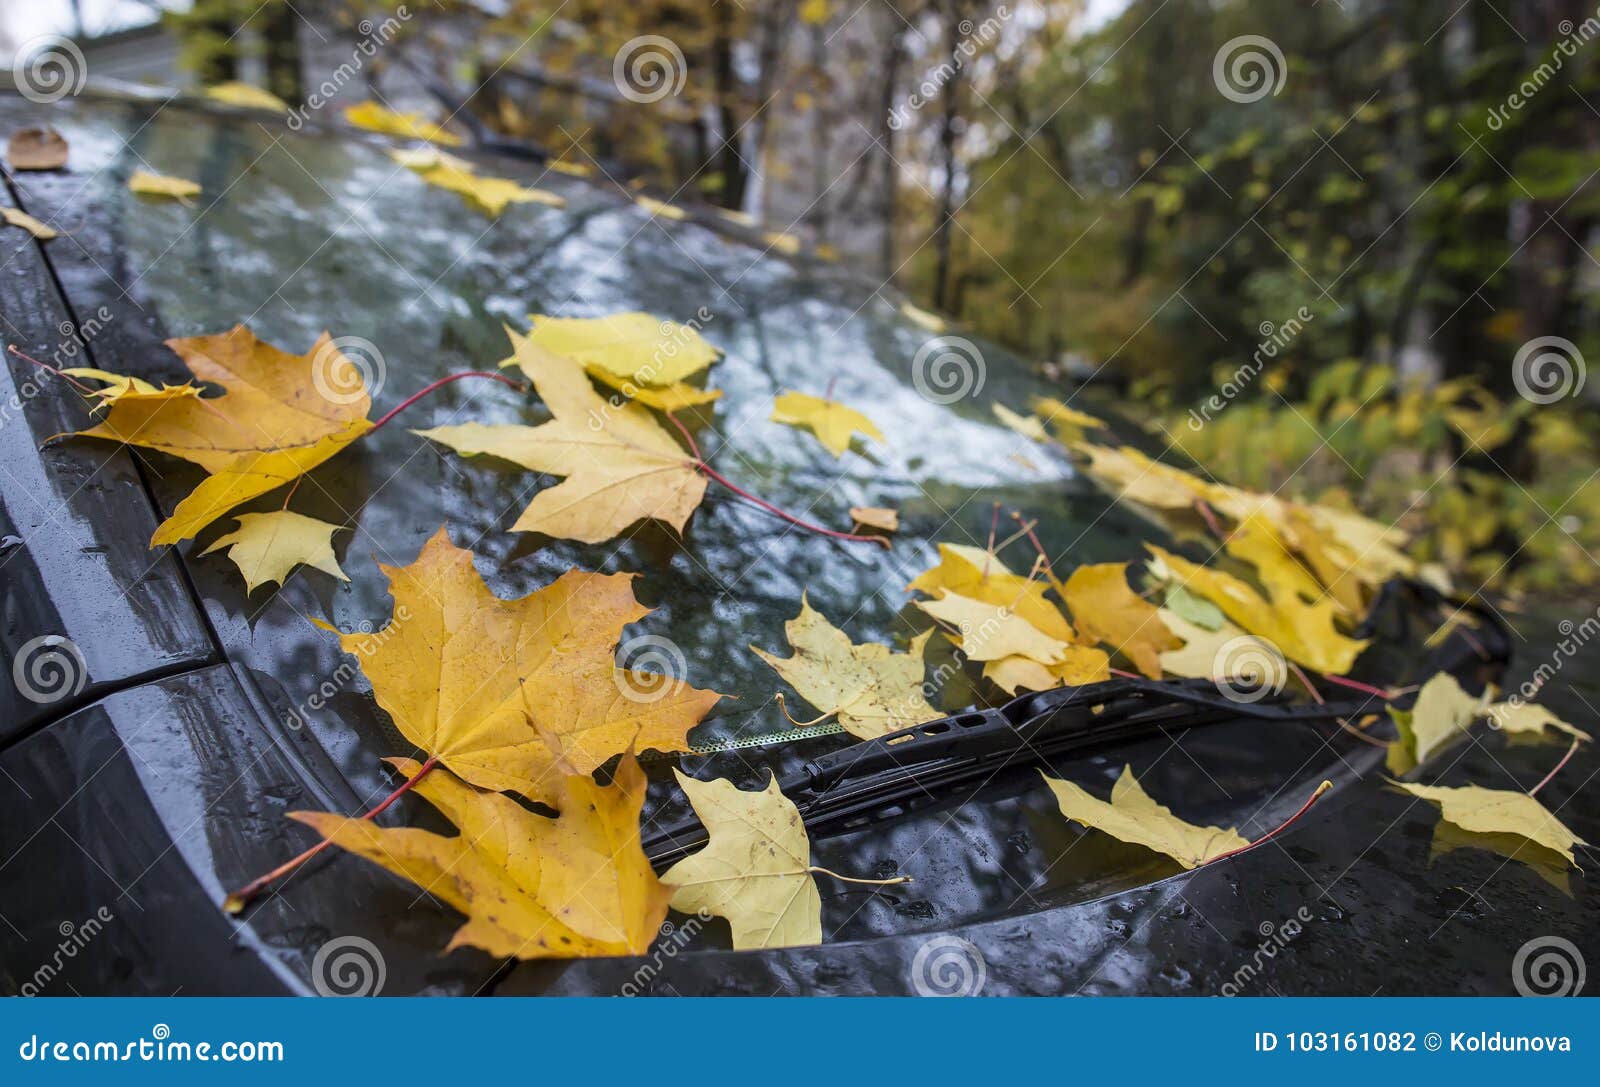 Попав в листья вода с поверхности. Осенний лист на лобовом стекле. Осенние листья на стекле авто. Кленовый лист на стекле авто. Осенний листик на лобовом.